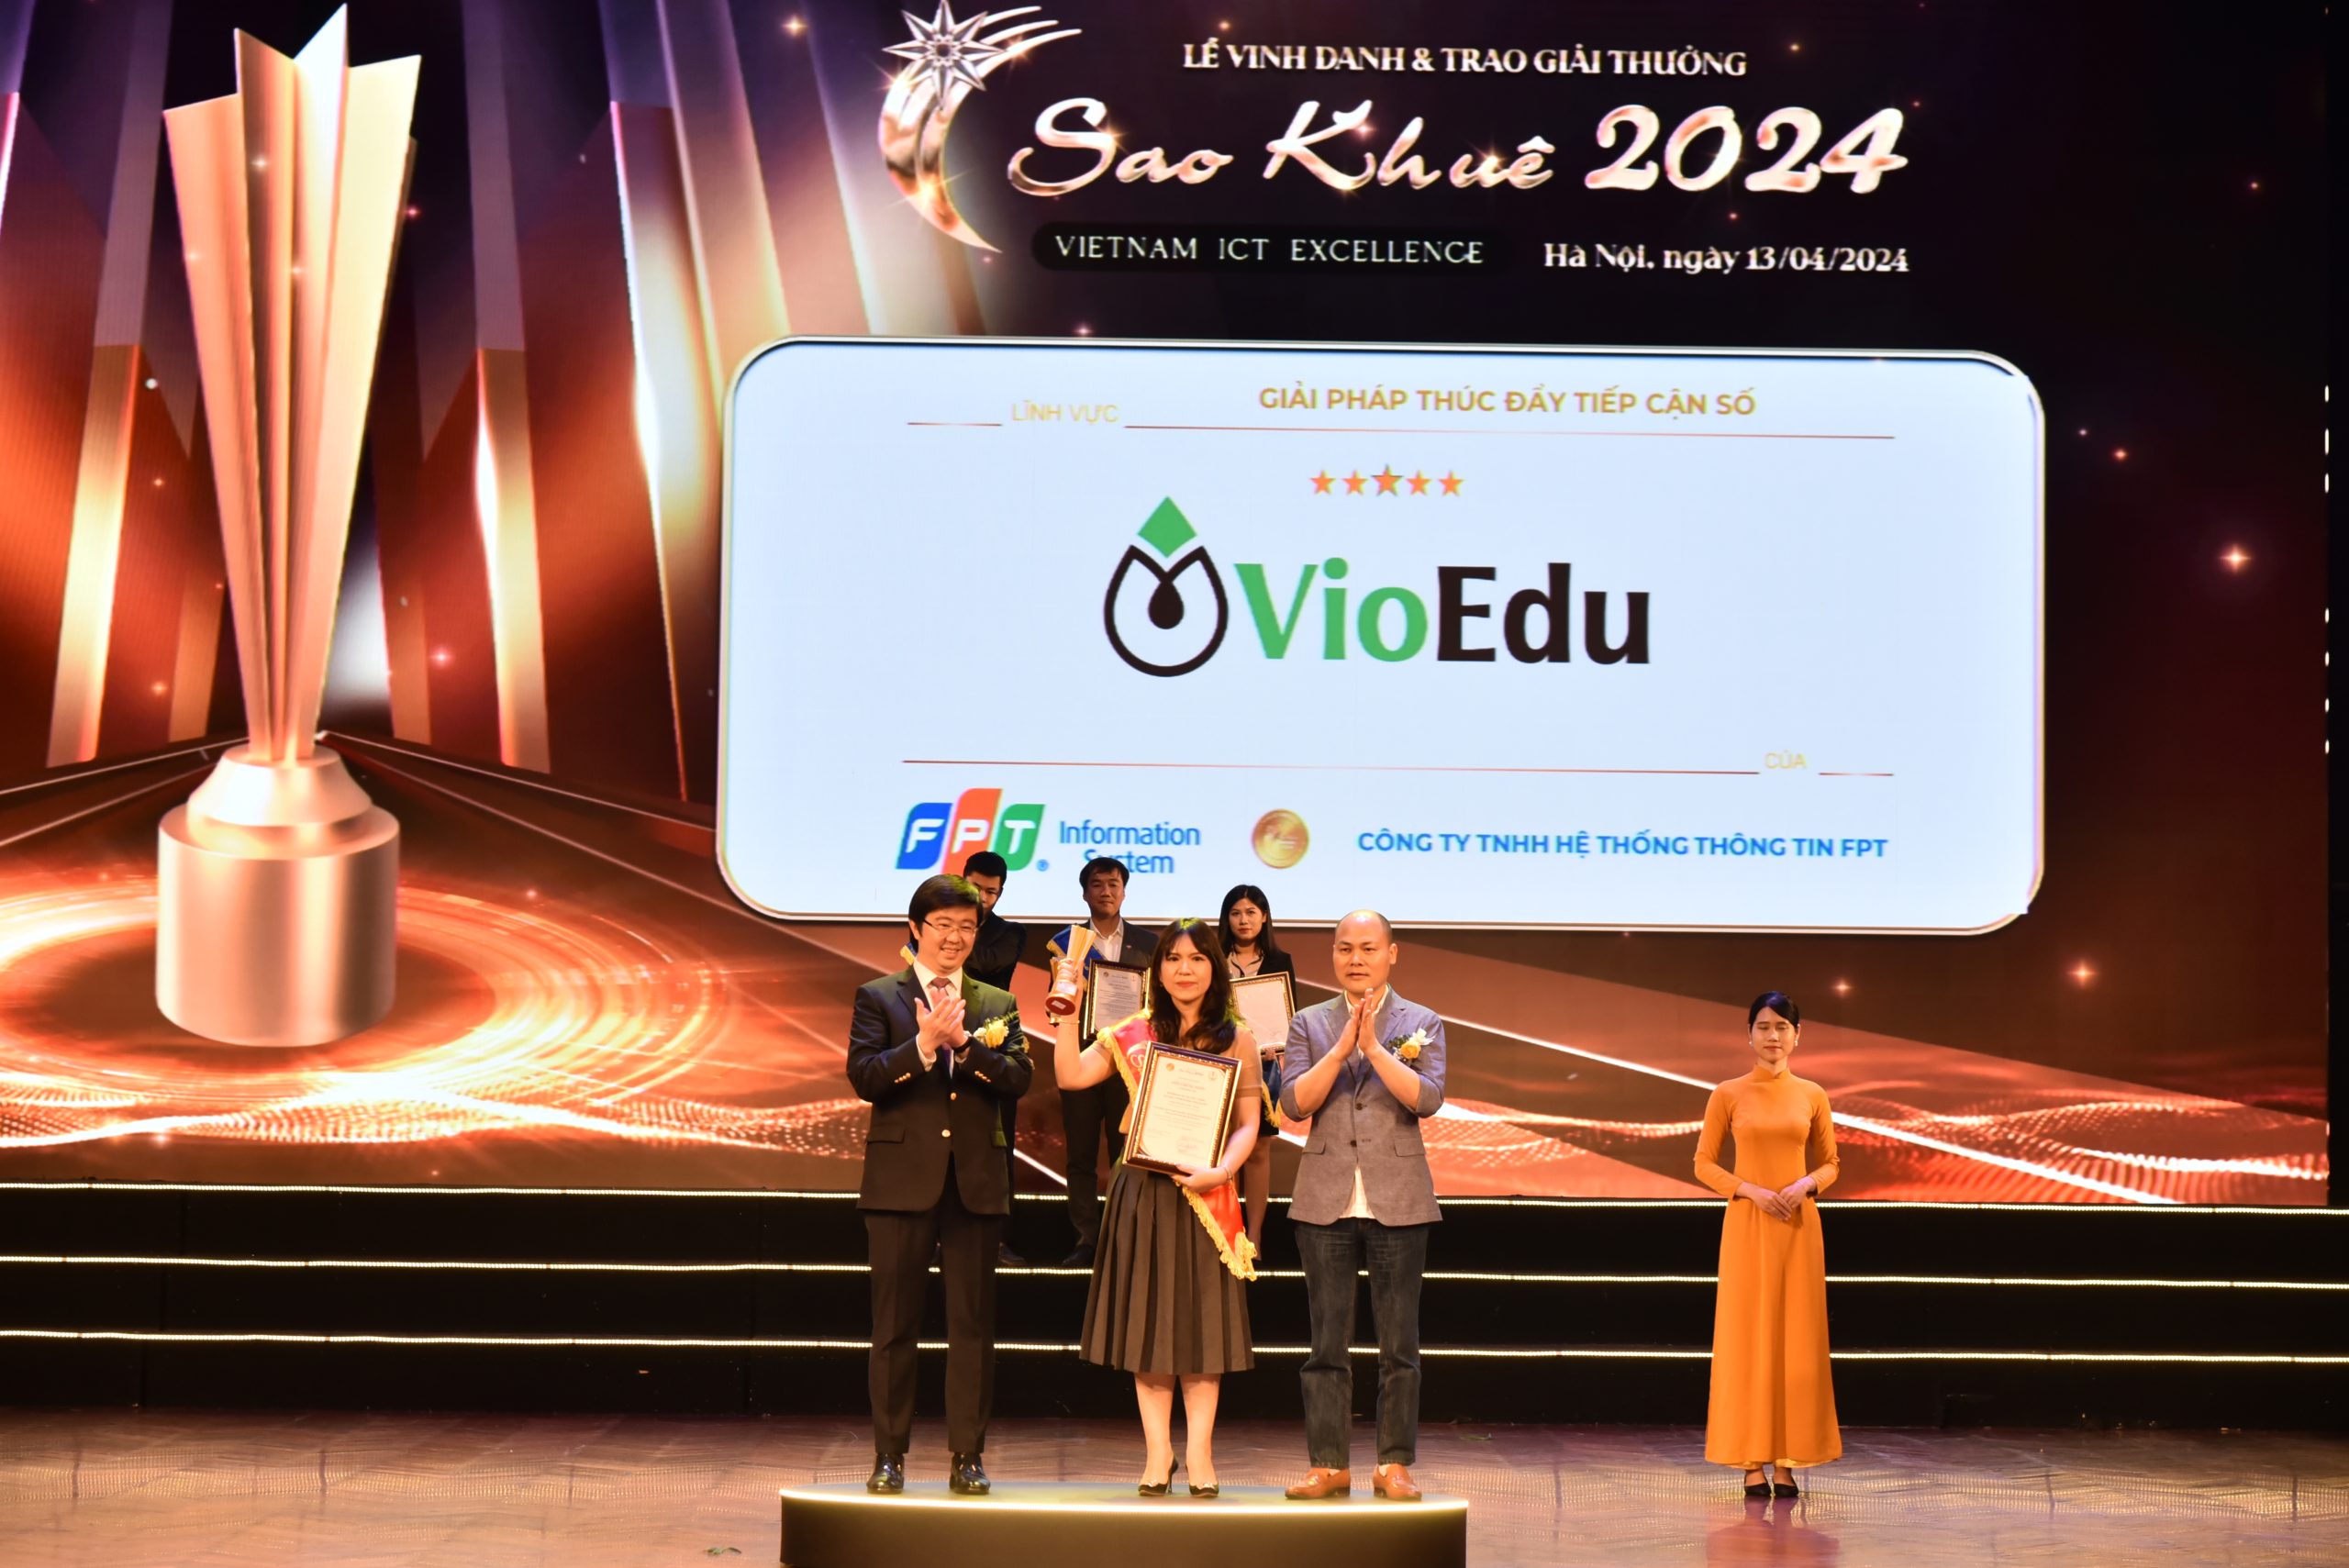 Hệ thống giáo dục trực tuyến – VioEdu đạt Giải thưởng Sao Khuê 2024 (xếp hạng 5 sao)